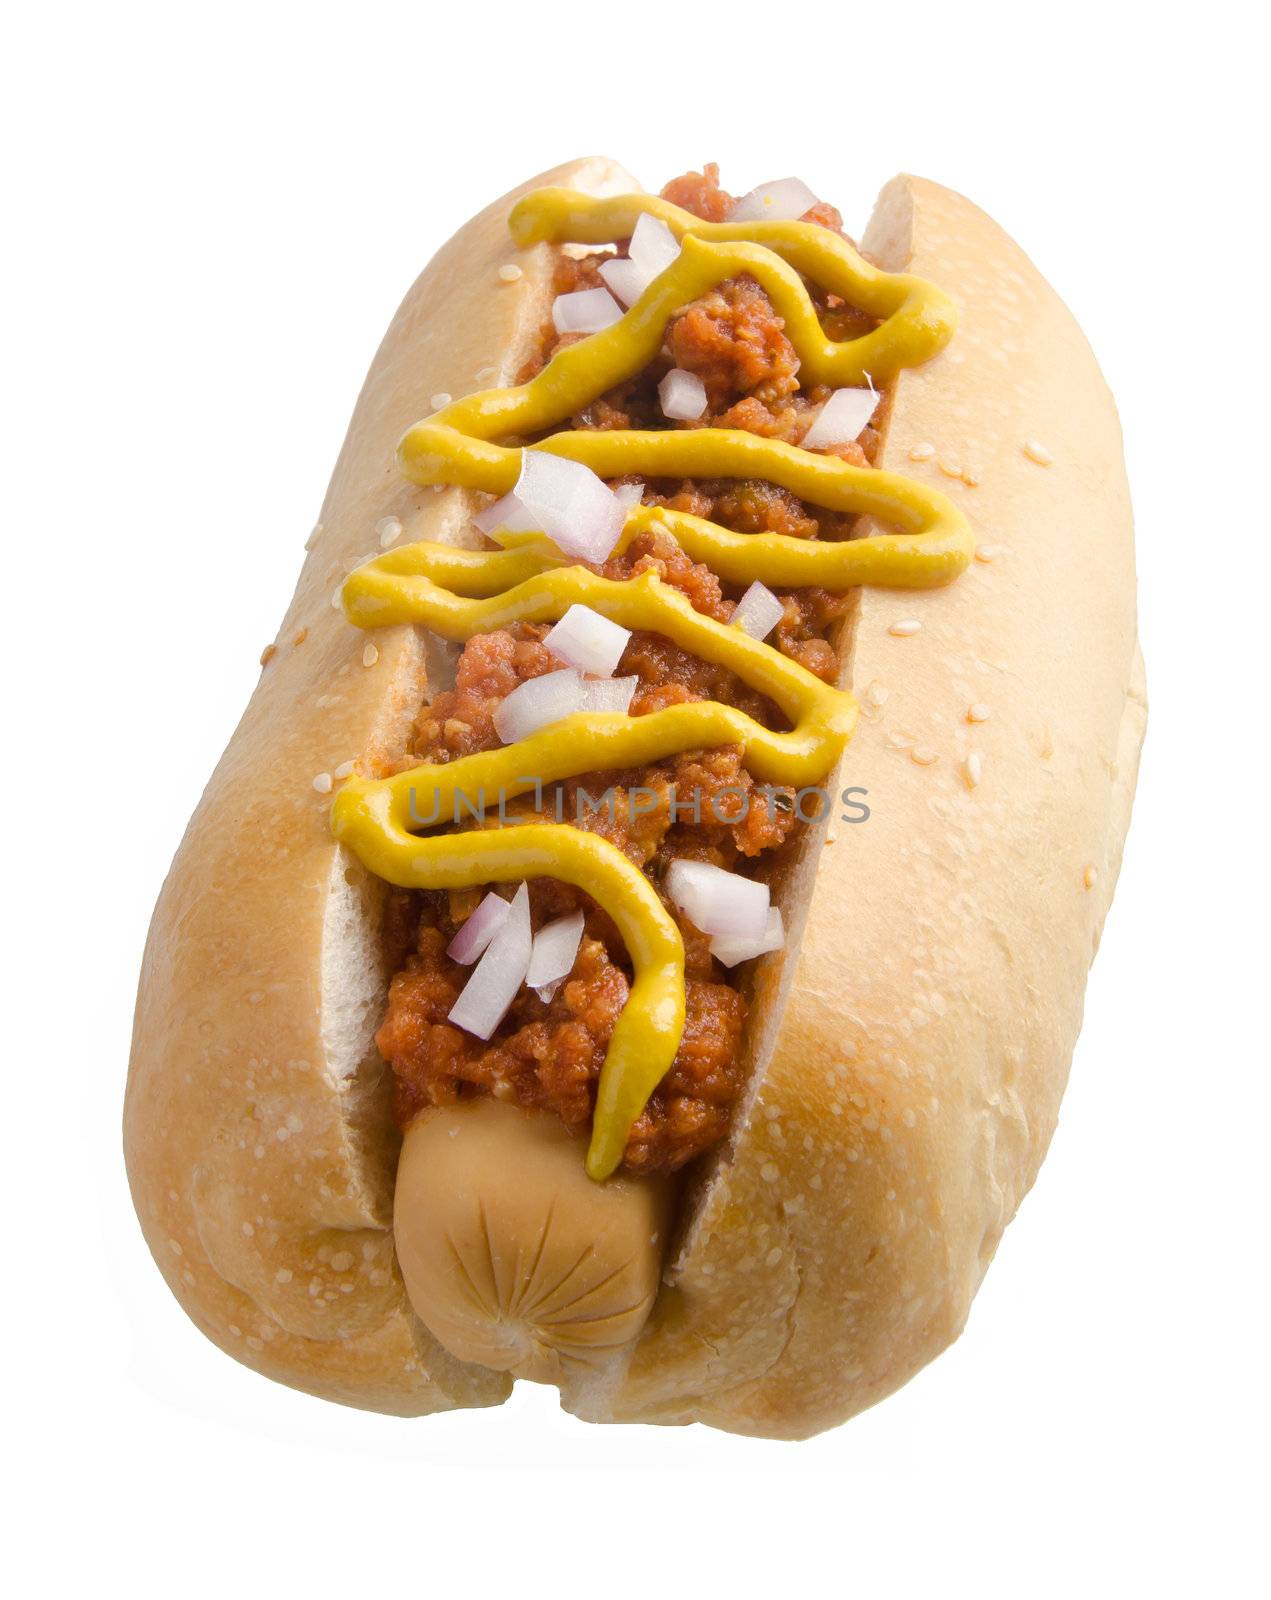 Hot dog on the white background